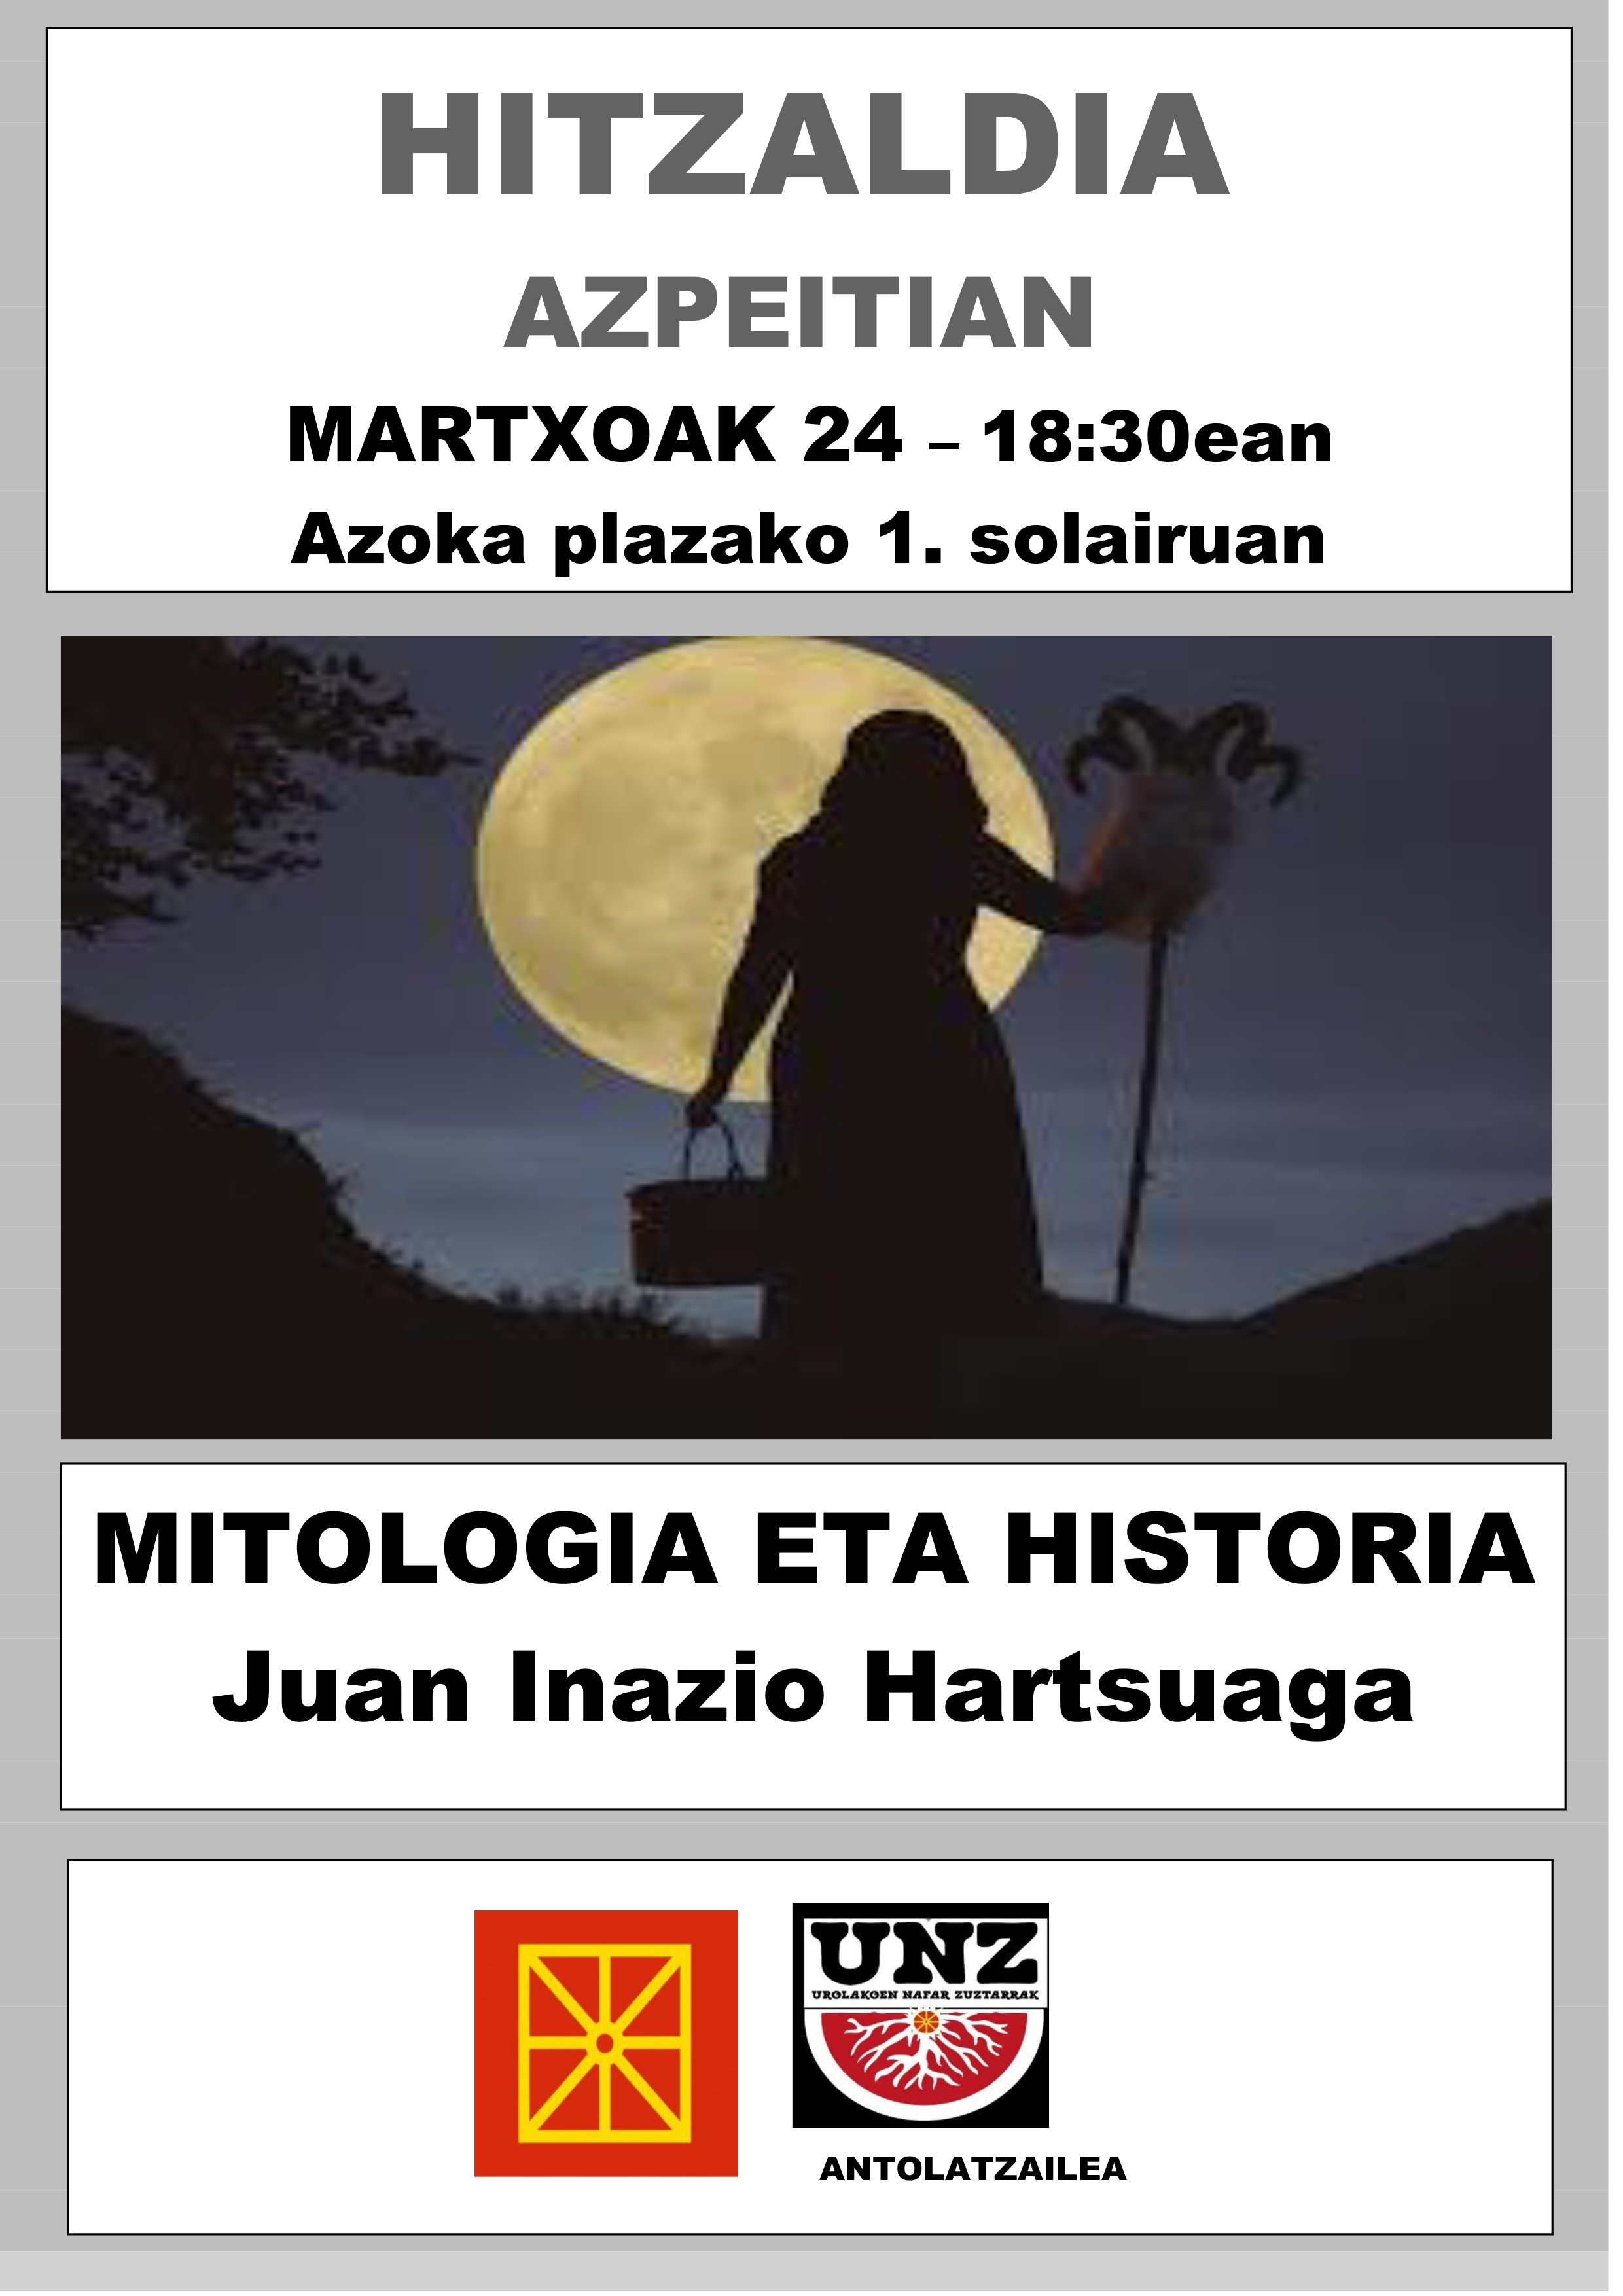 MITOLOGIA ETA HISTORIA